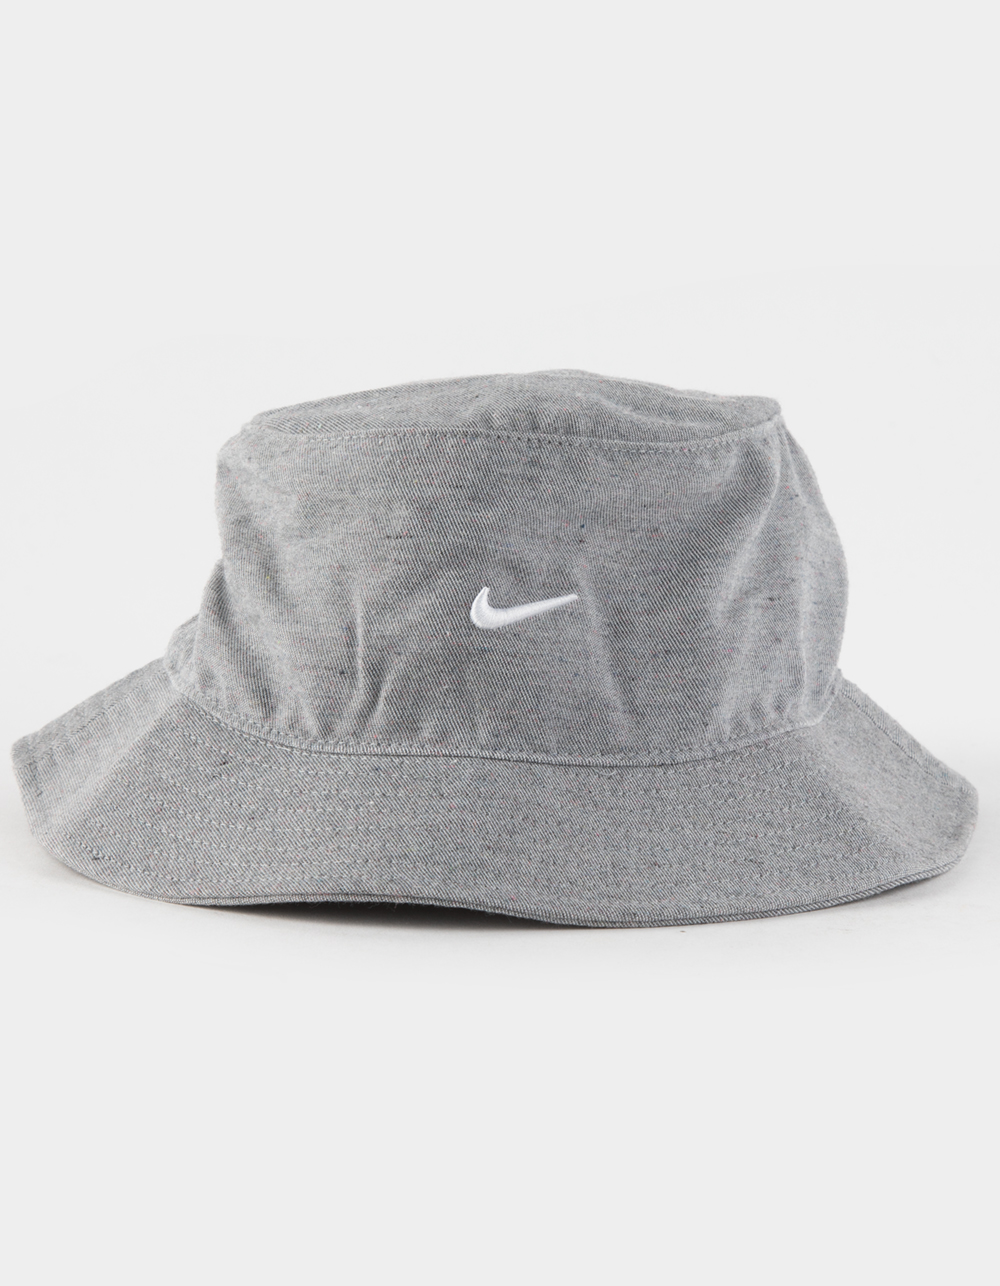 NIKE Sportswear Bucket Hat - GRAY | Tillys